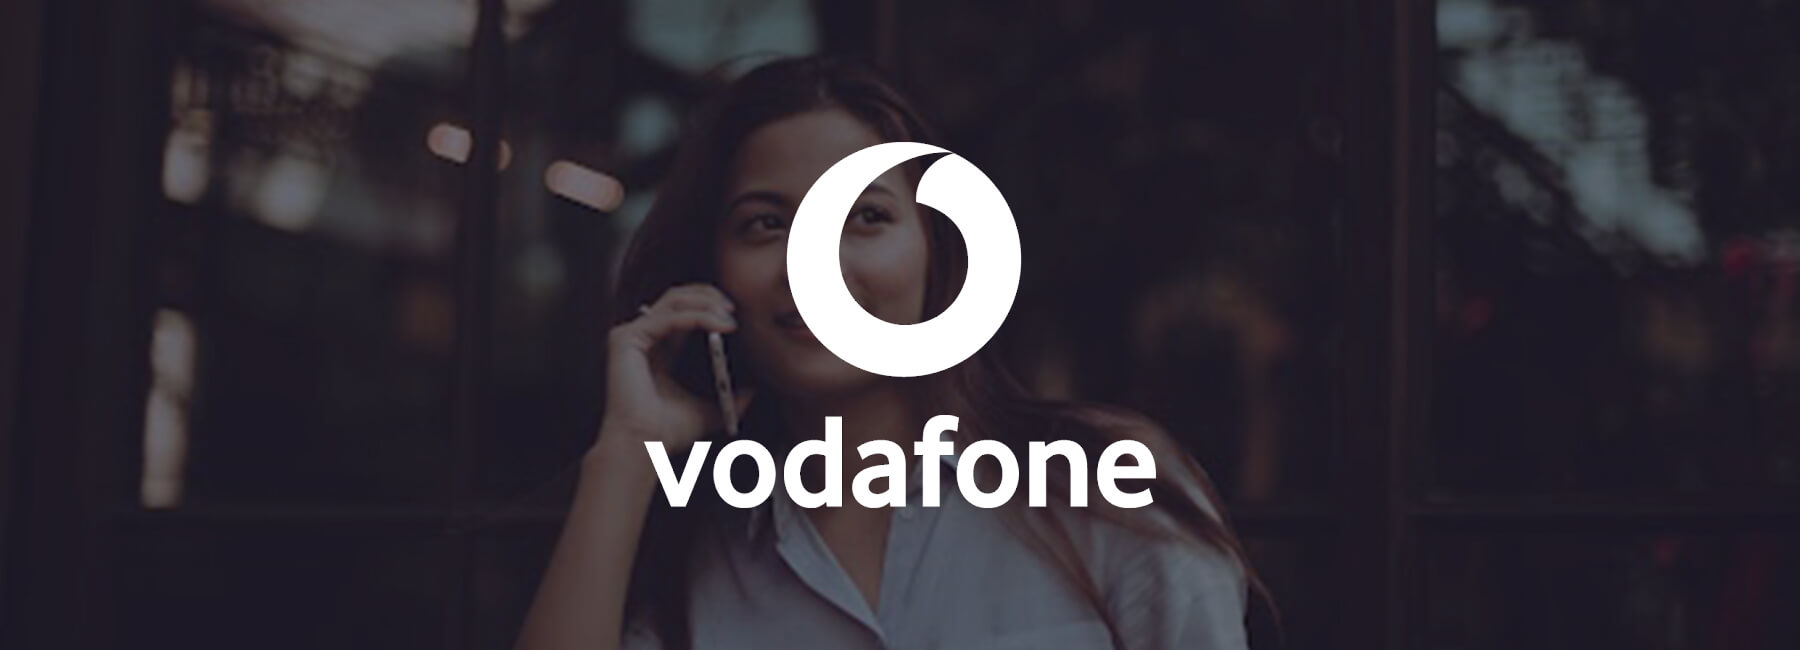 Vodafone Ireland fomenta la orientación al cliente en todos sus canales digitales